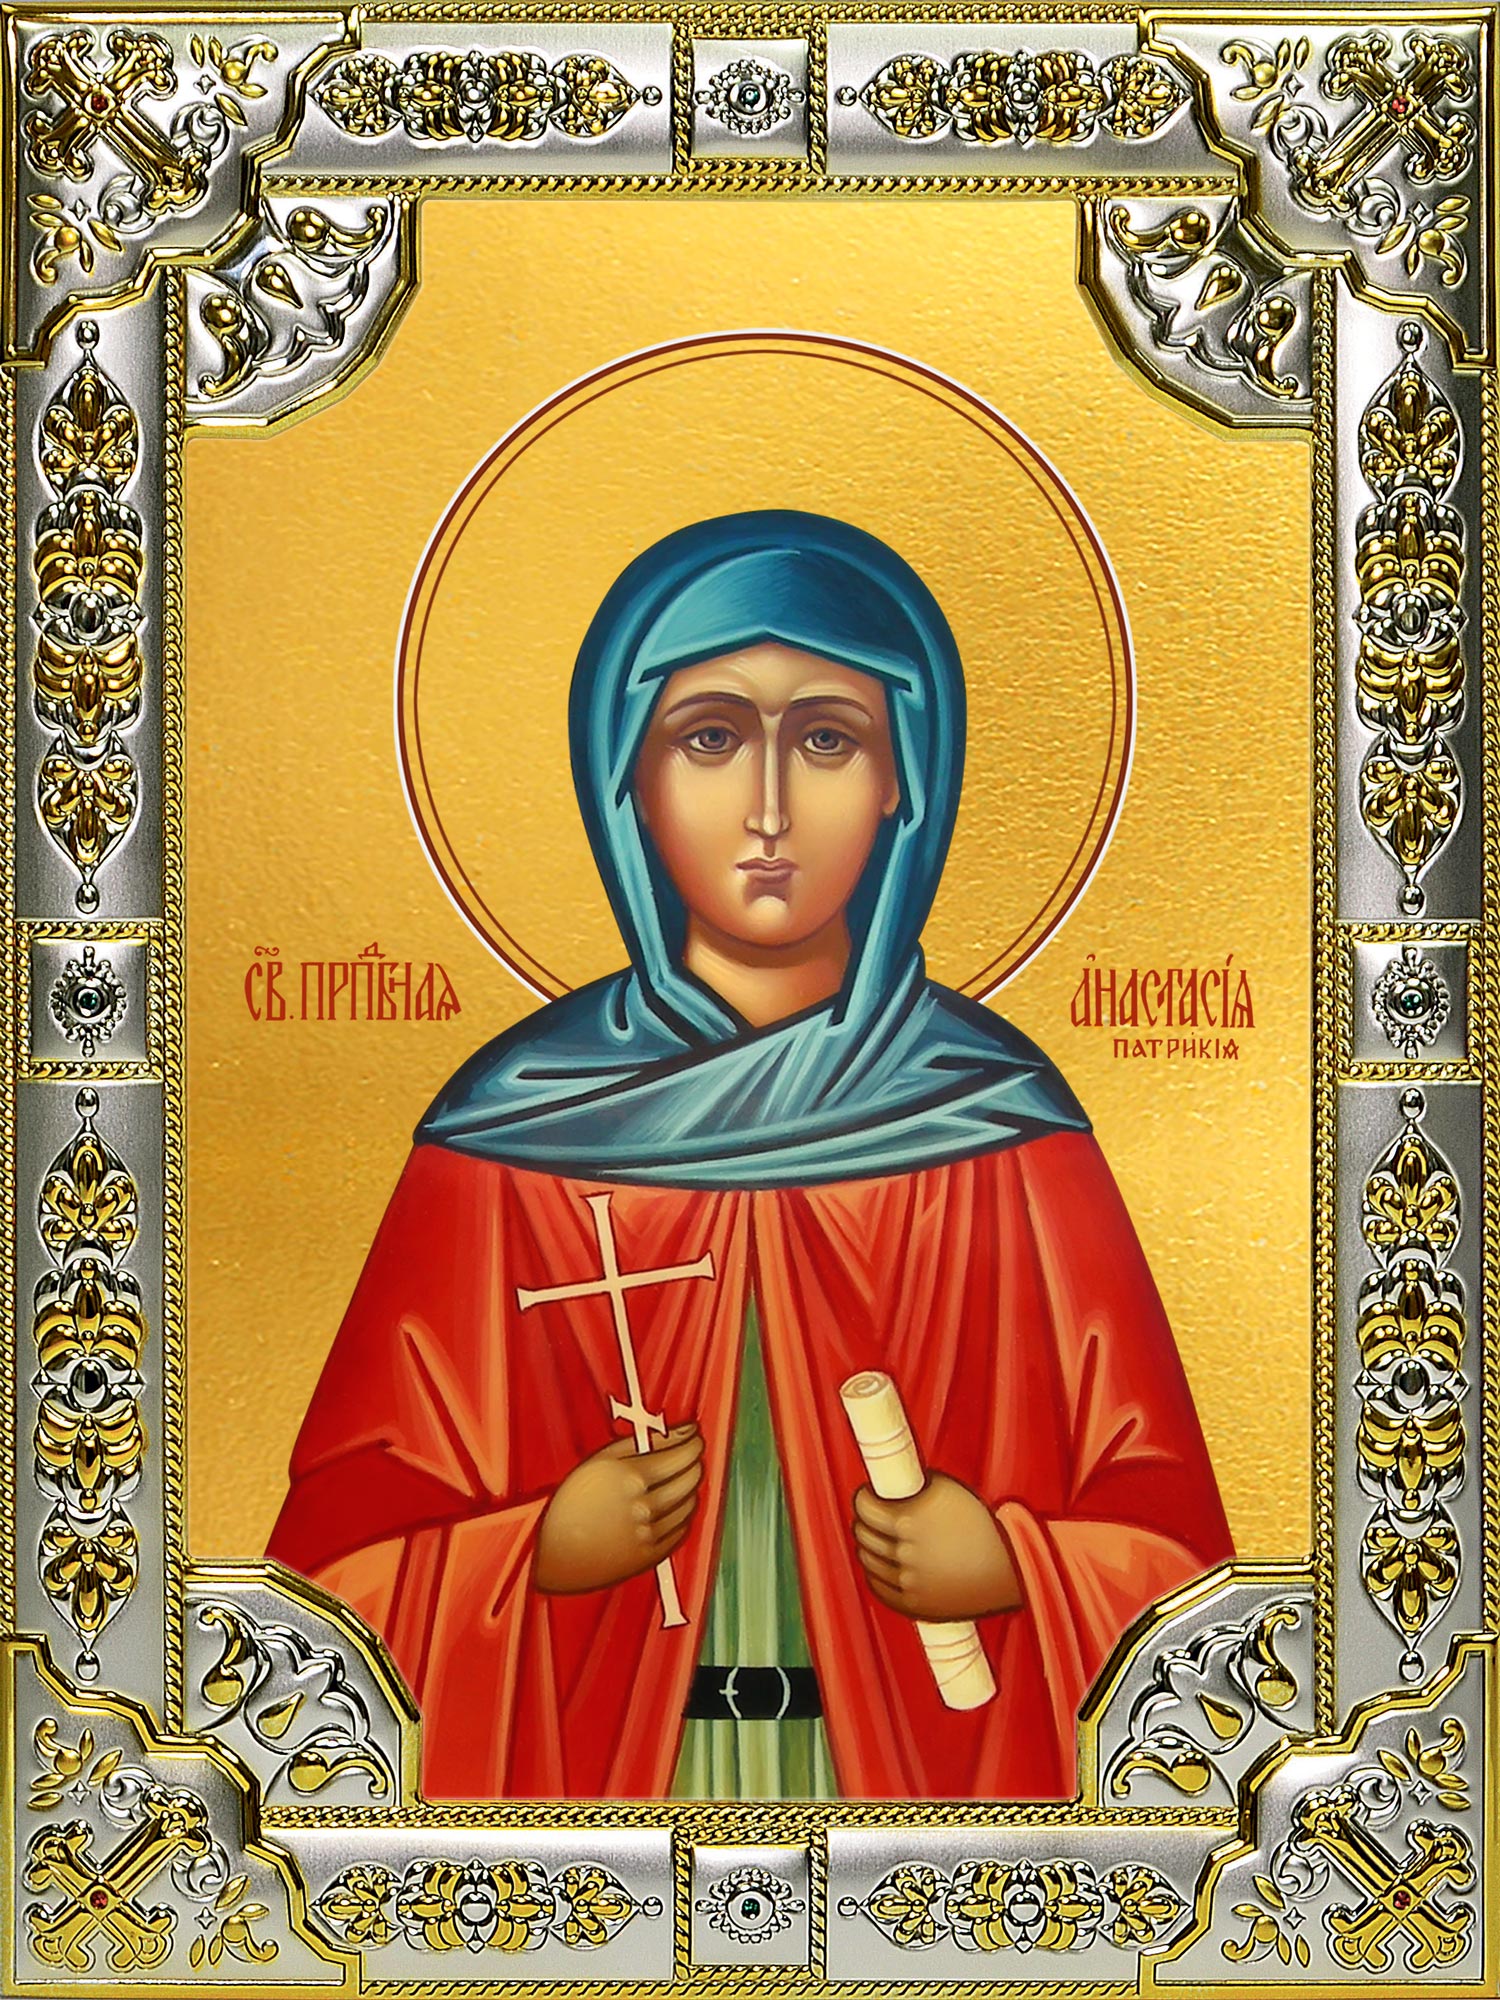 купить икону Анастасия Патрикия, Александрийская